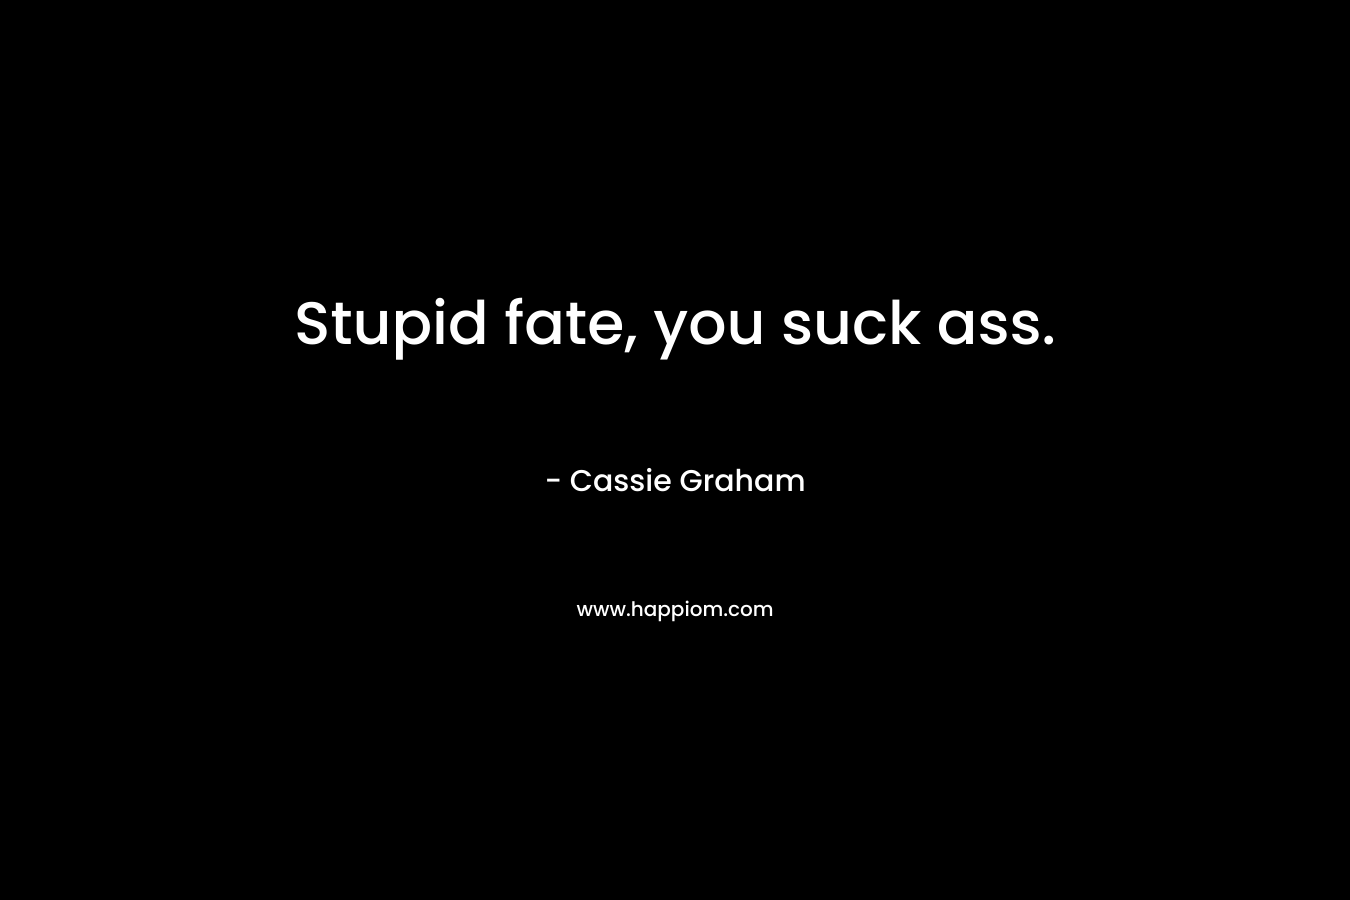 Stupid fate, you suck ass. – Cassie Graham